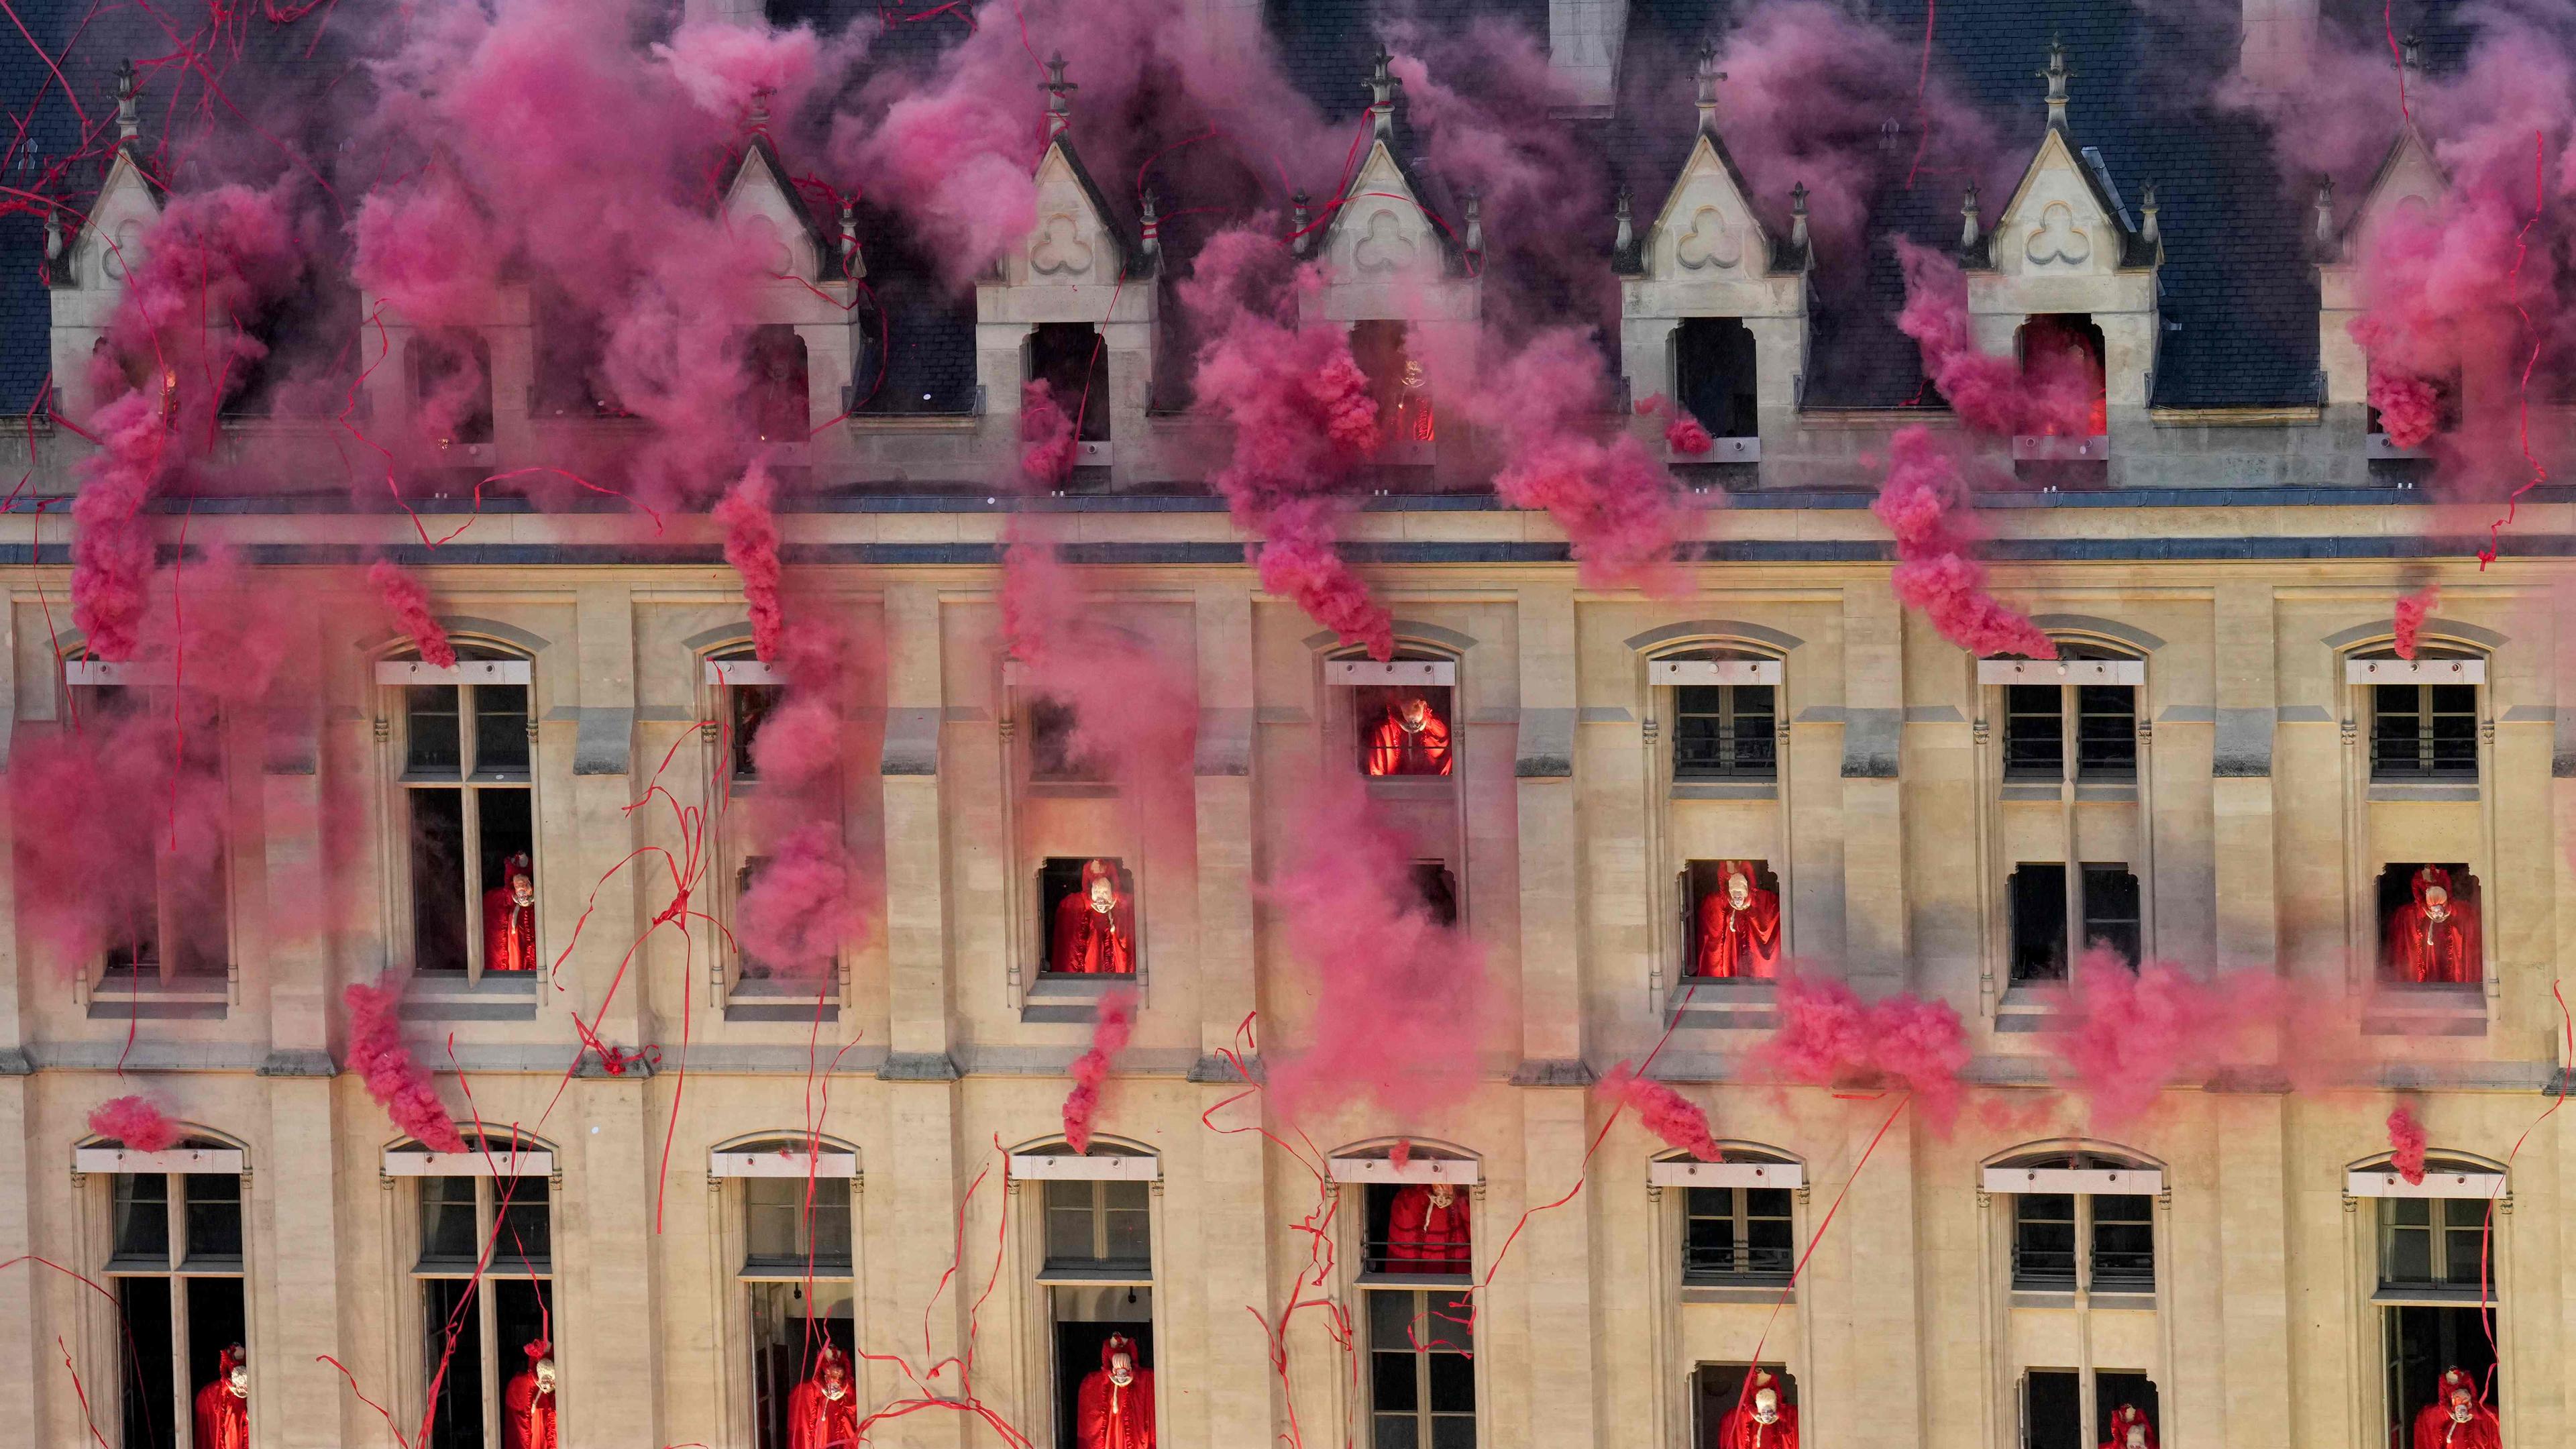 Roter Rauch kommt aus Fenstern eines Gebäudes in Paris als Teil einer Performance der Eröffnungsfeier der Olympischen Spiele.